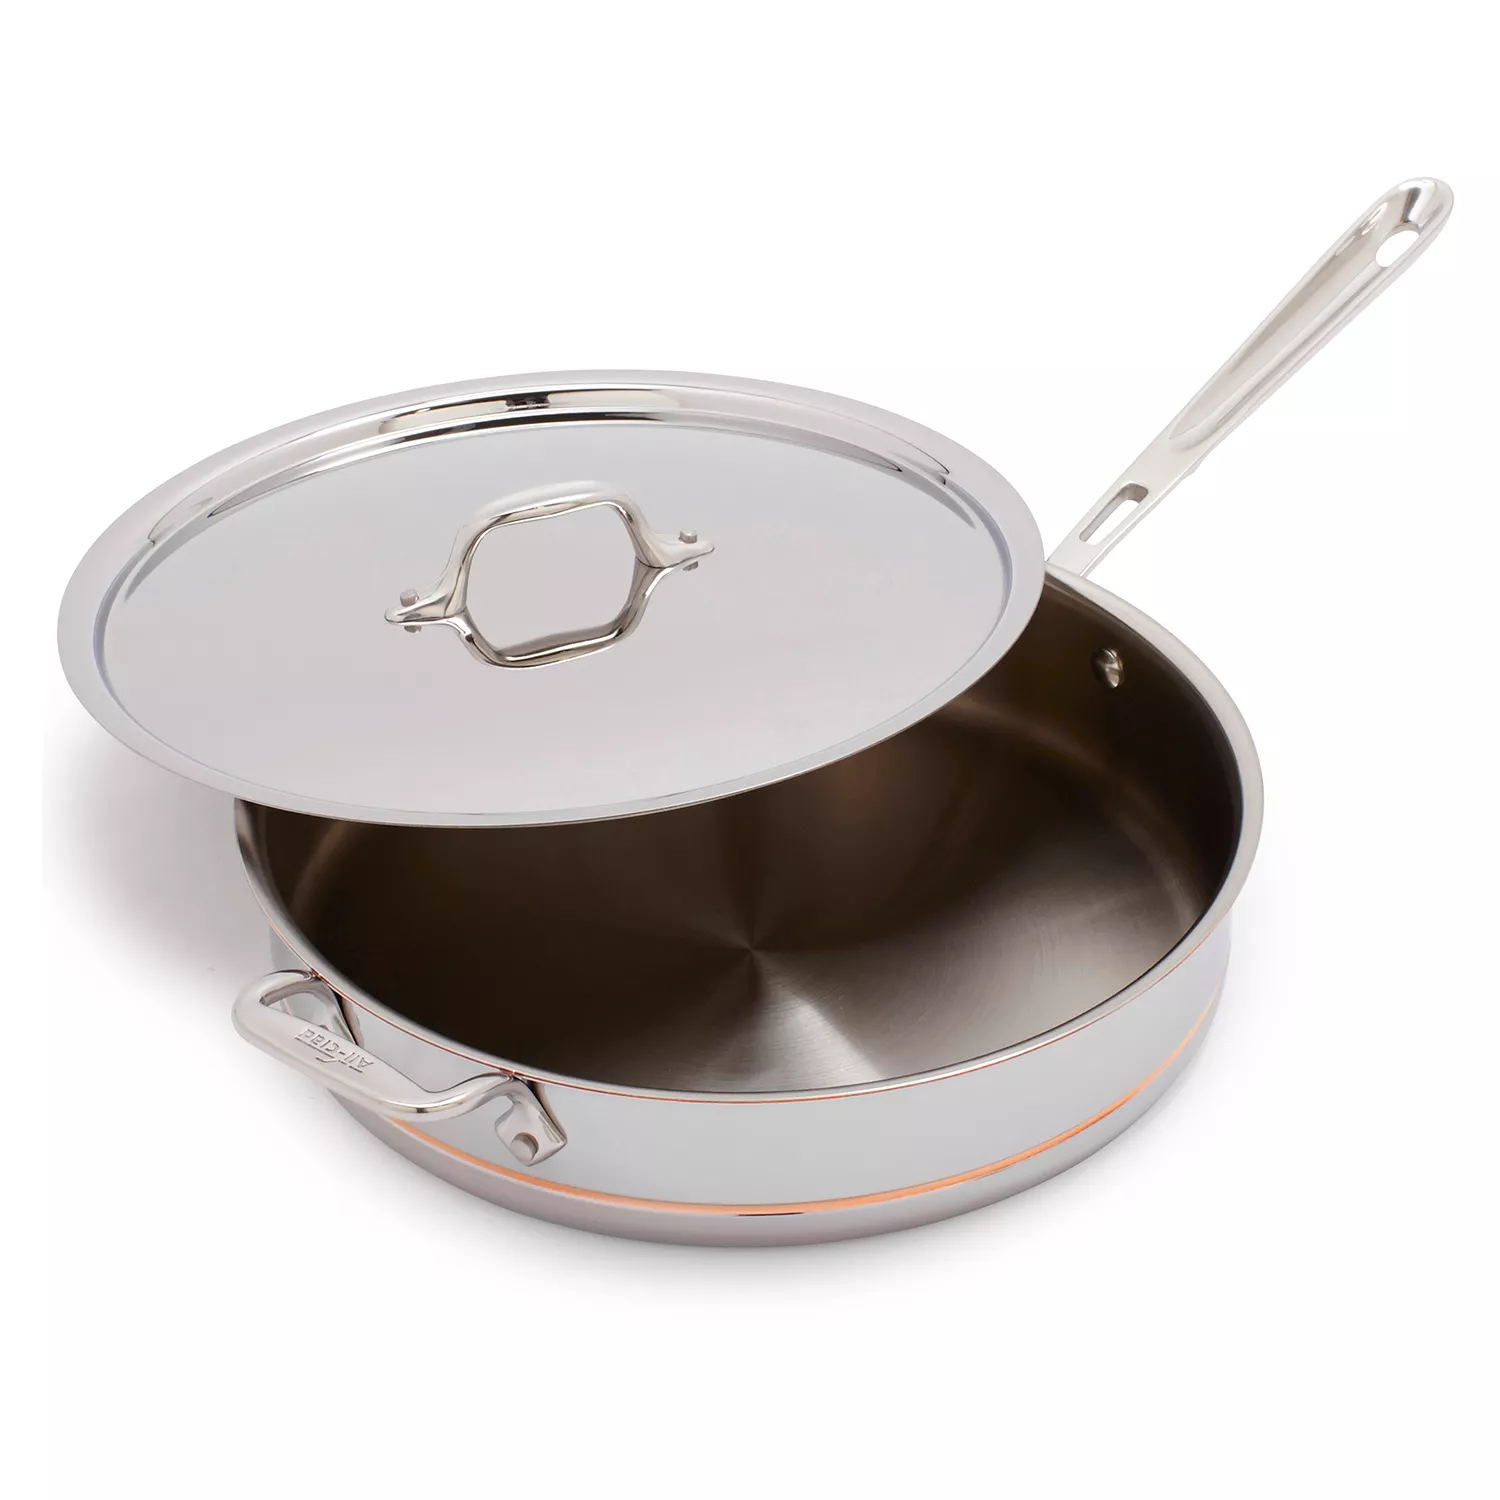 All-Clad Copper Core Sauté Pan